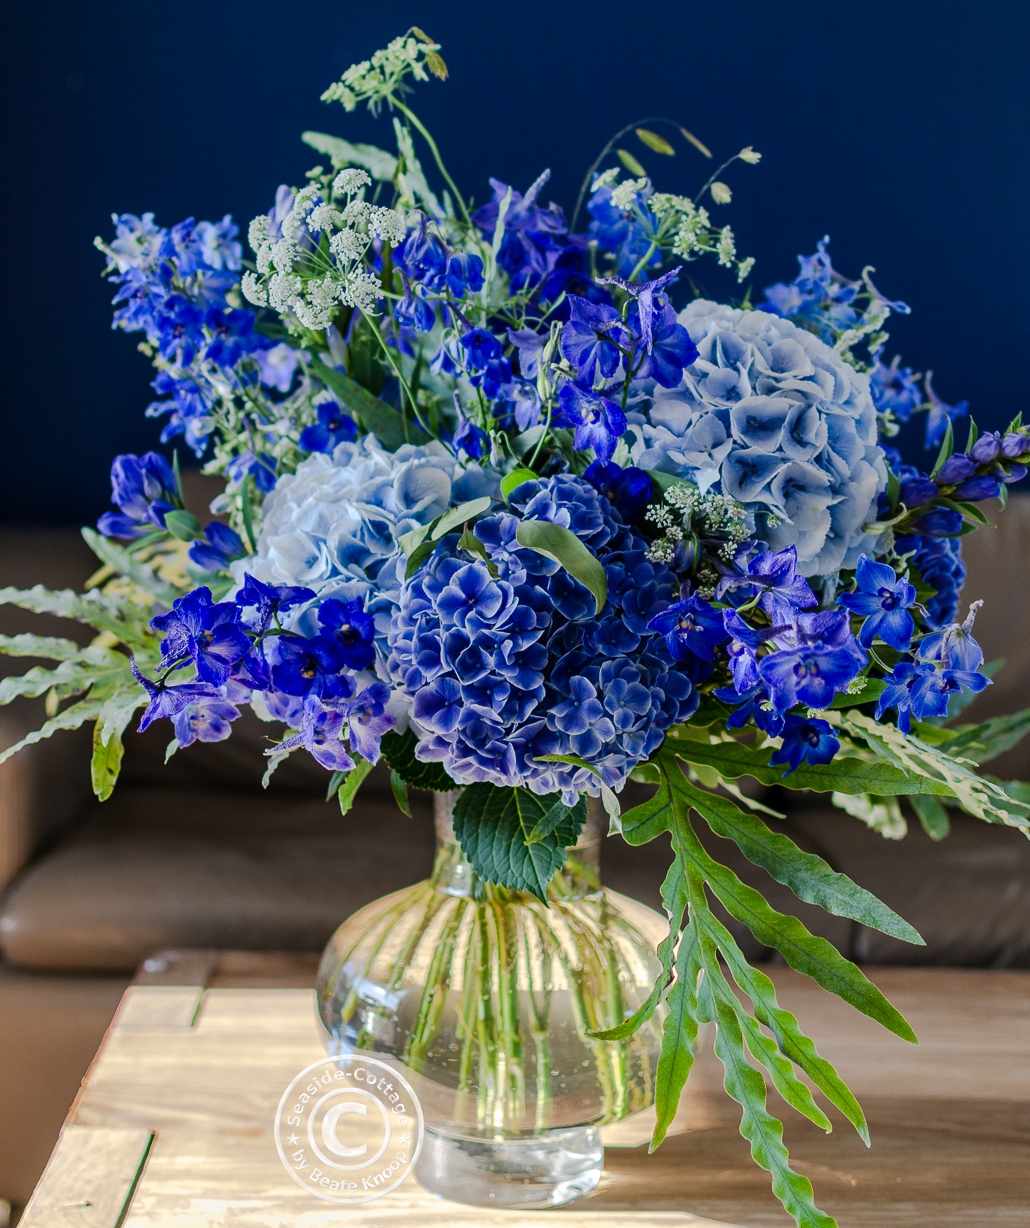 Strauß mit blauem Rittersporn und blauen Hortensien vor blauer Wand